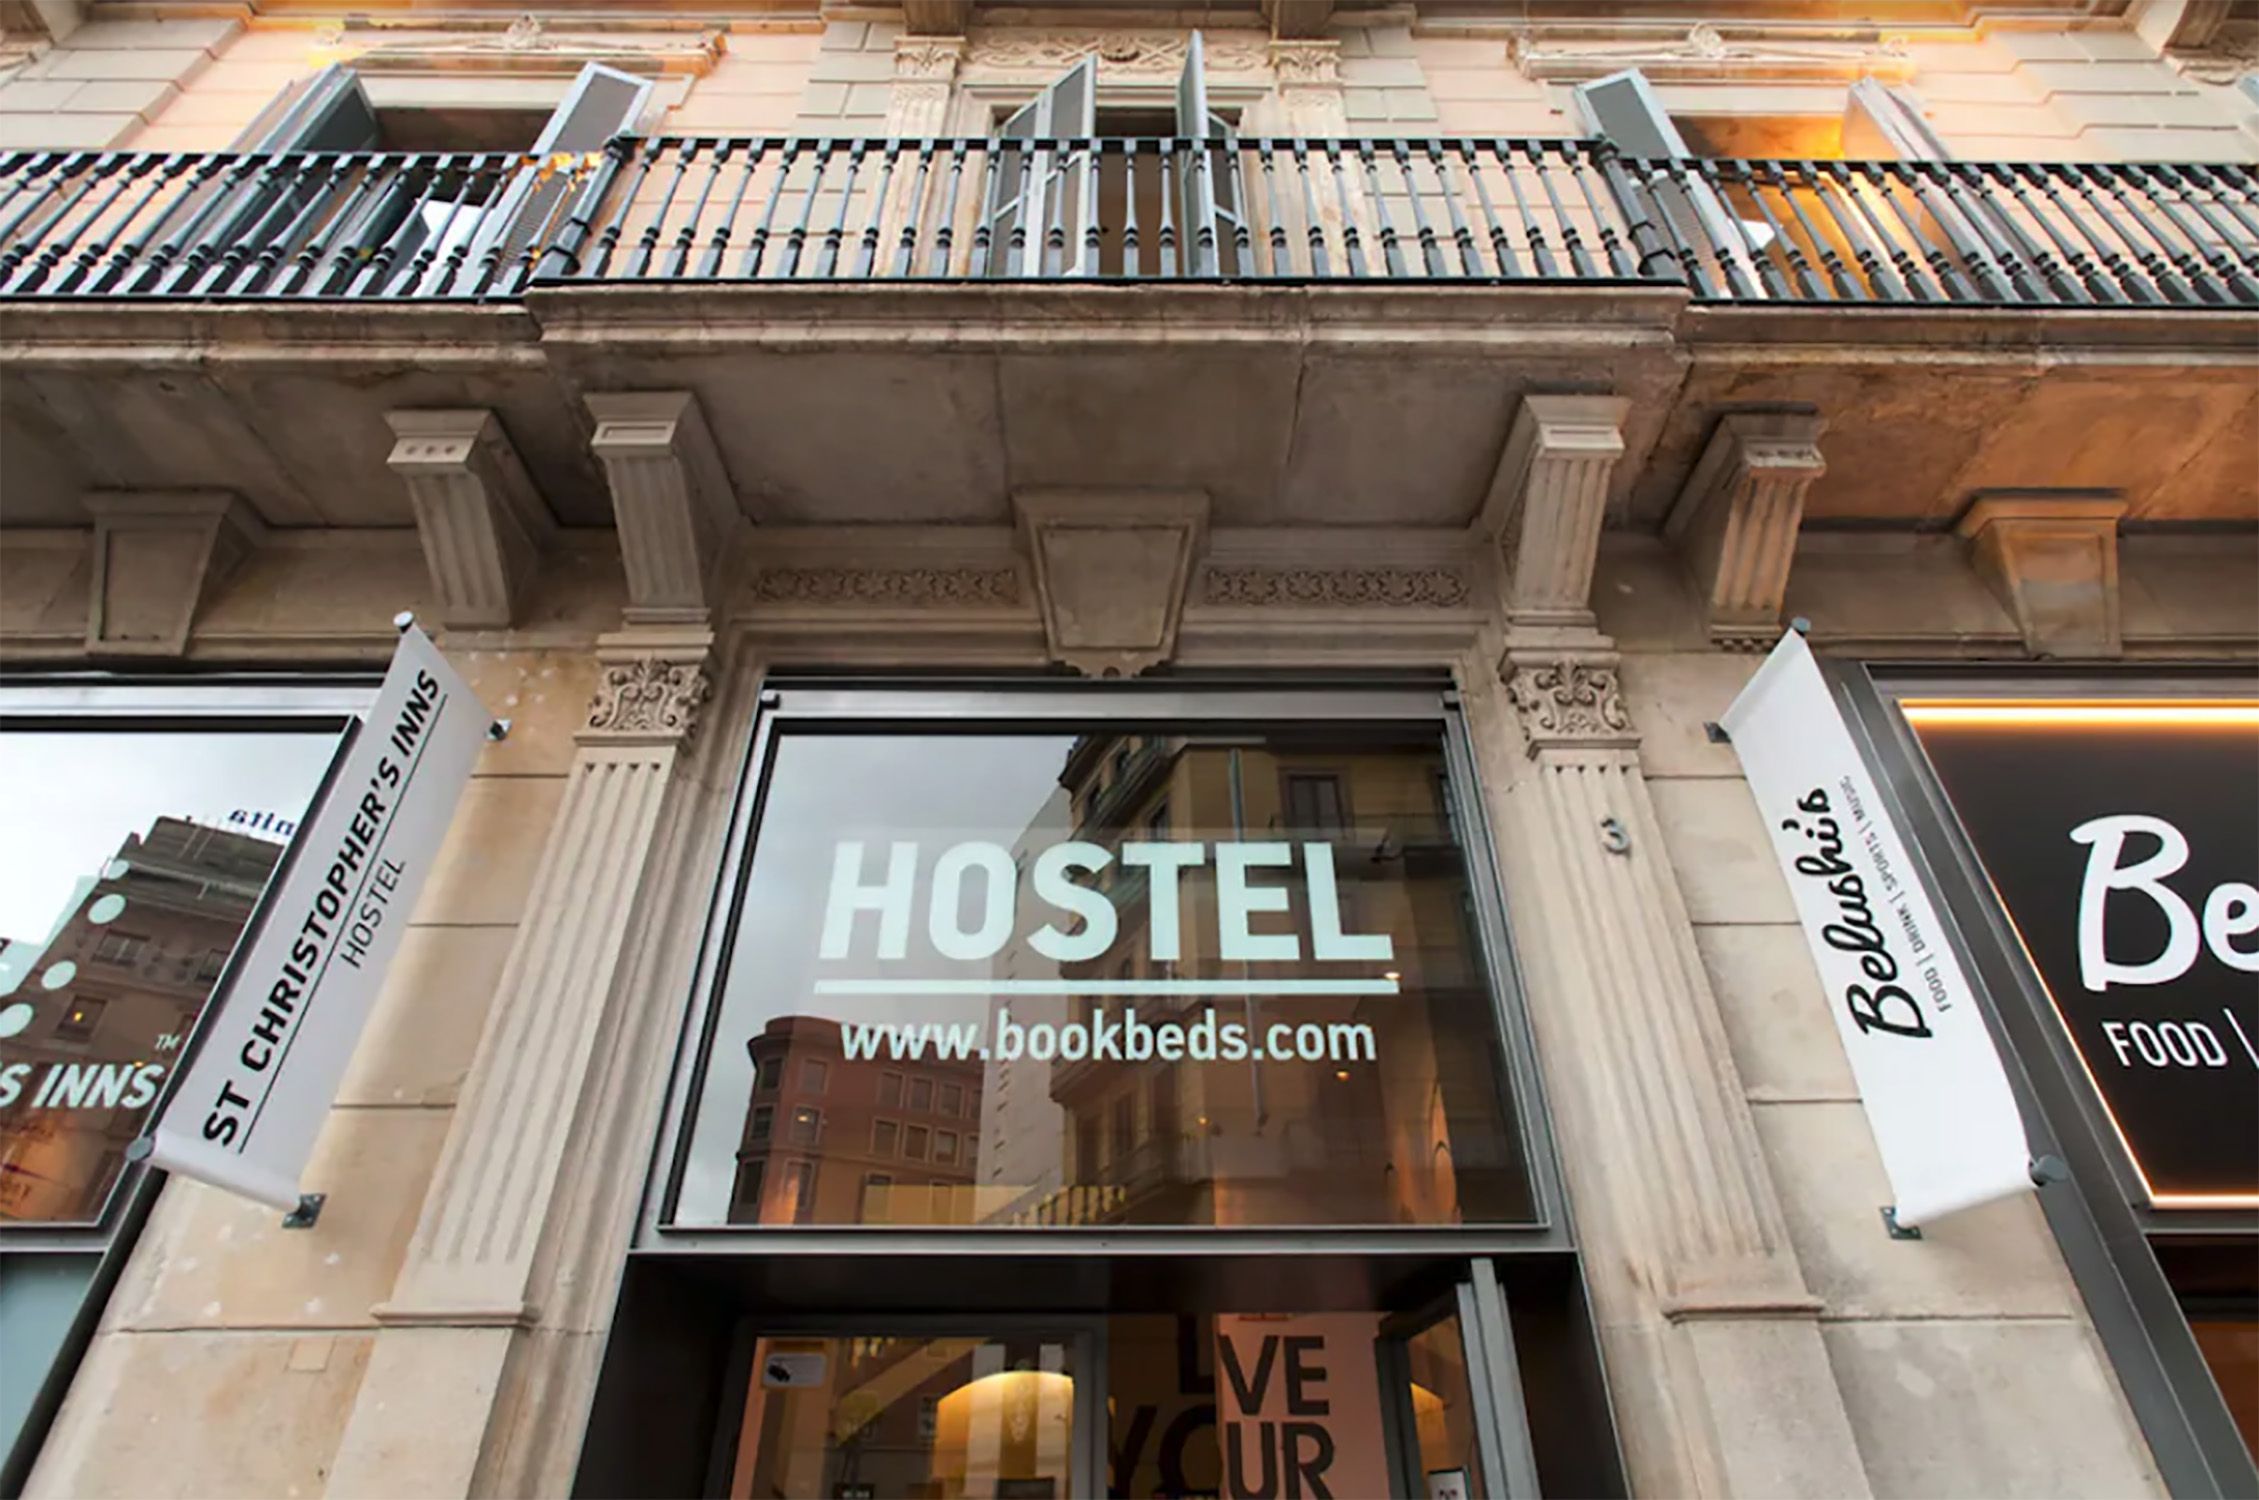 St Christopher's Inn | Hostel in Barcelona